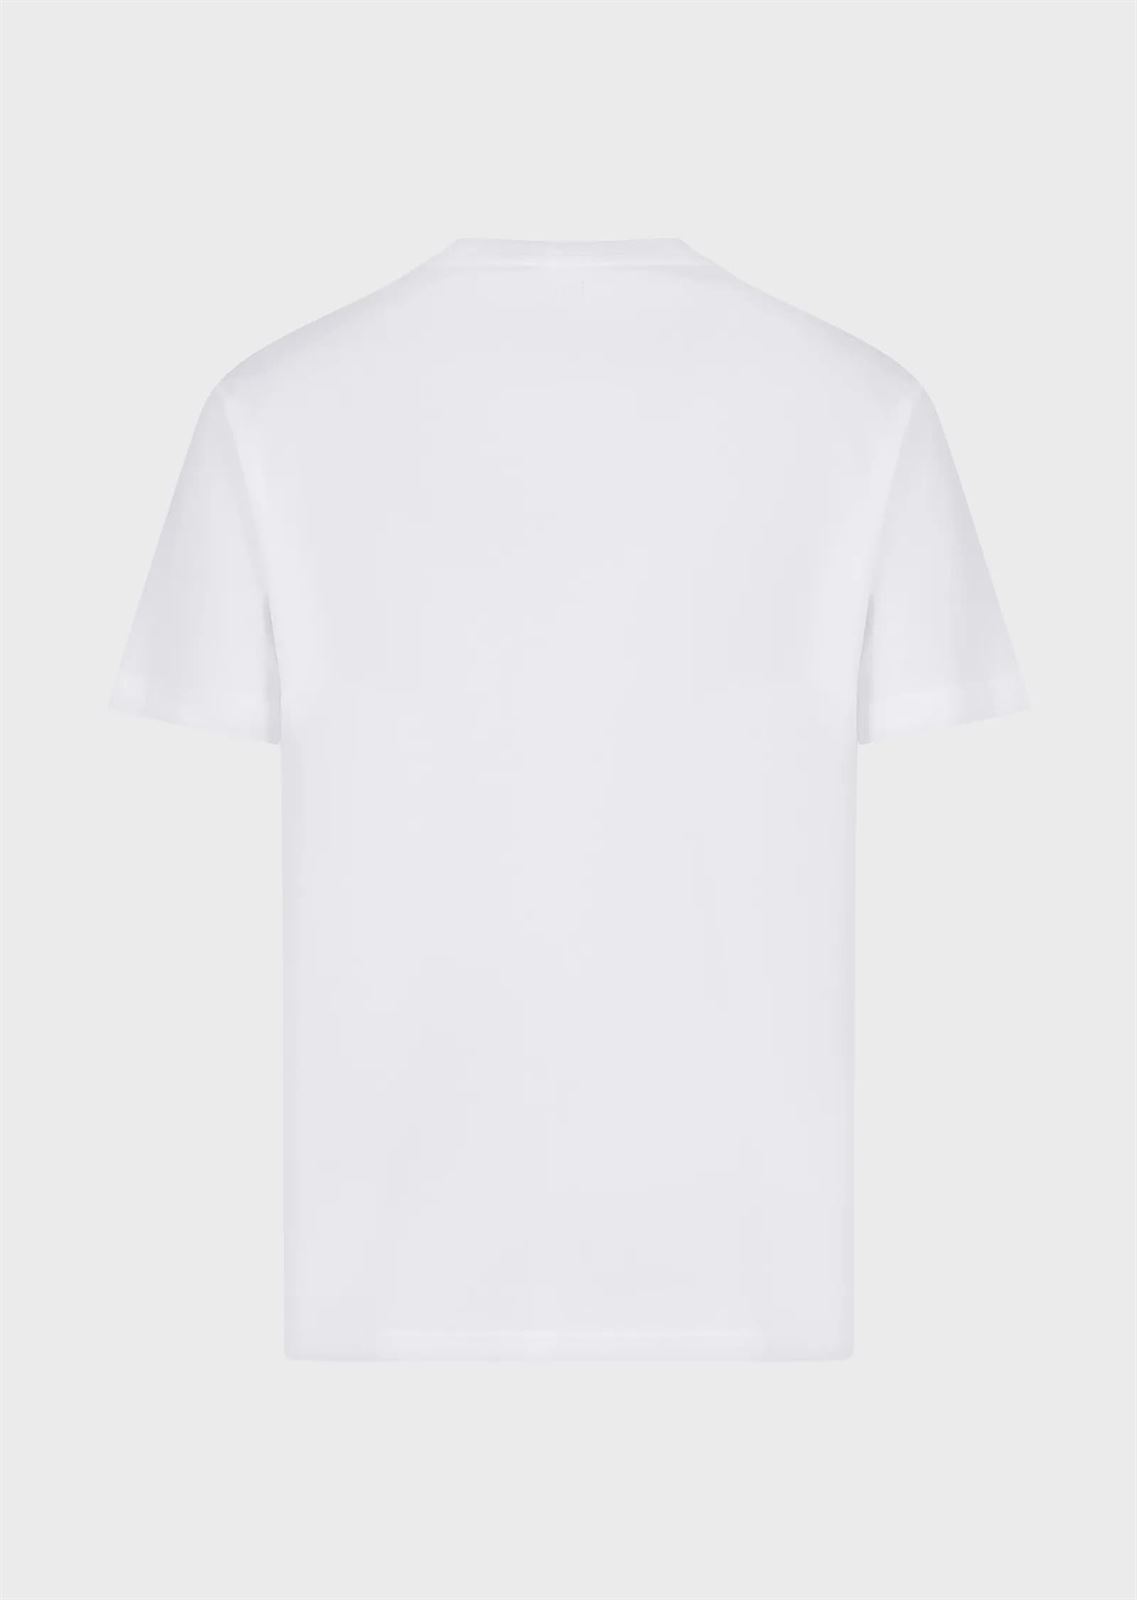 Camiseta EA7 Emporio Armani 3RPT62 PJ03Z 1100 white - Imagen 3